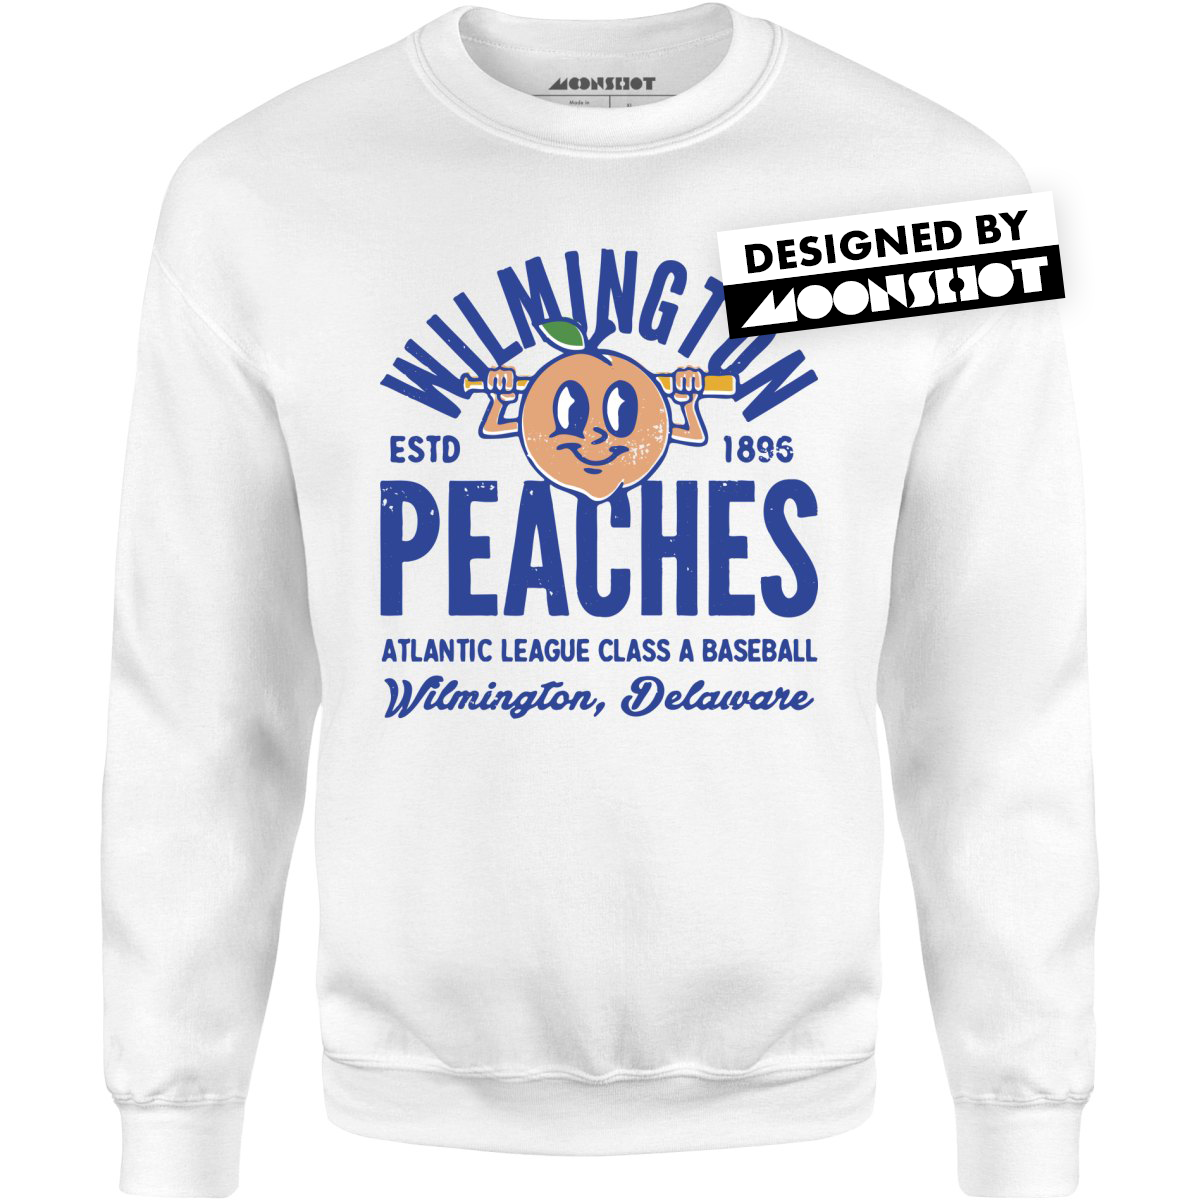 Wilmington Peaches - Delaware - Vintage Defunct Baseball Teams - Unisex Sweatshirt